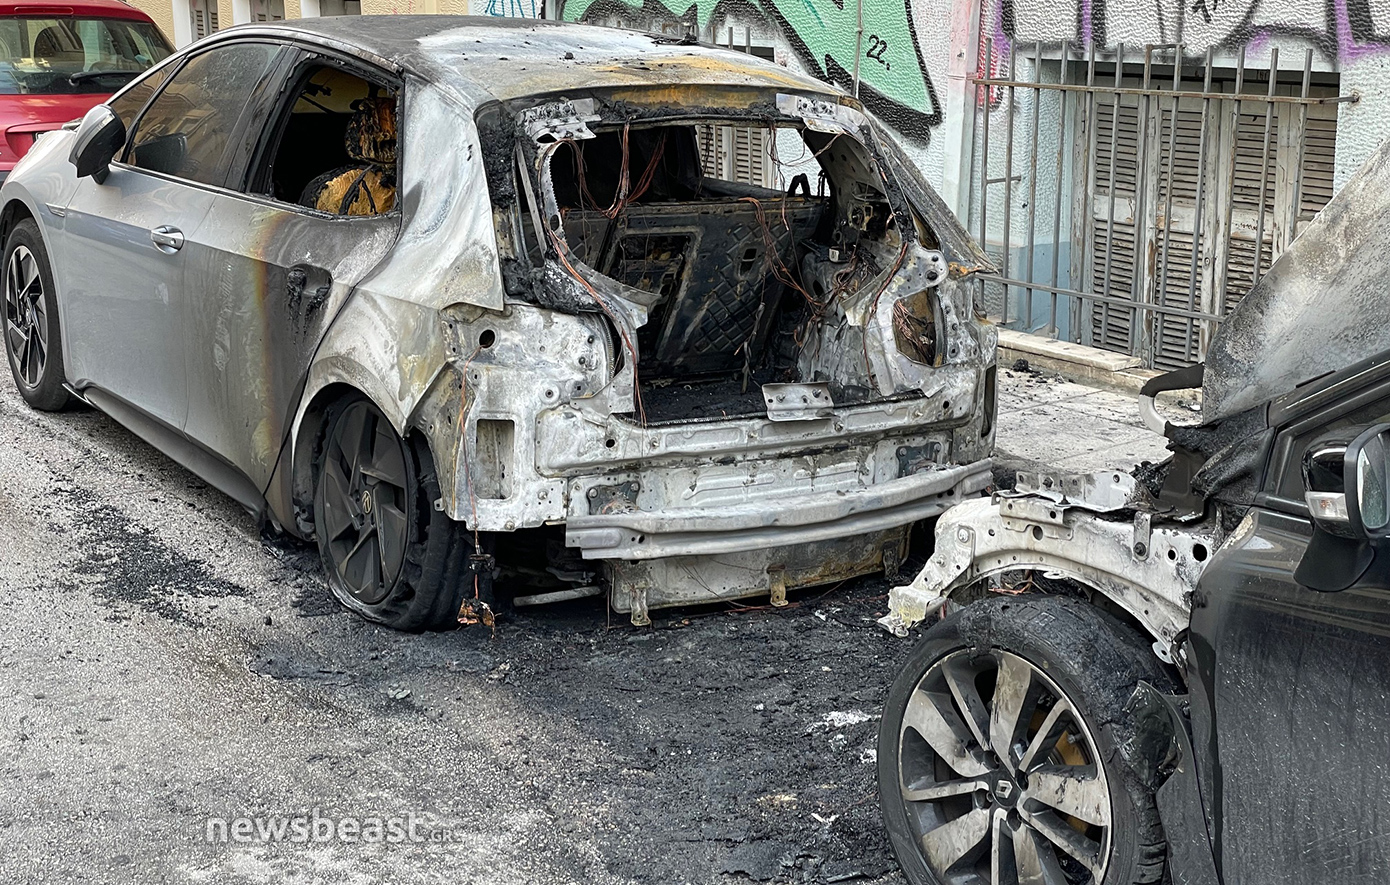 Συναγερμός από ταυτόχρονες εμπρηστικές ενέργειες σε διαφορετικά σημεία στα Εξάρχεια &#8211; Δύο συλλήψεις στην Ιουλιανού